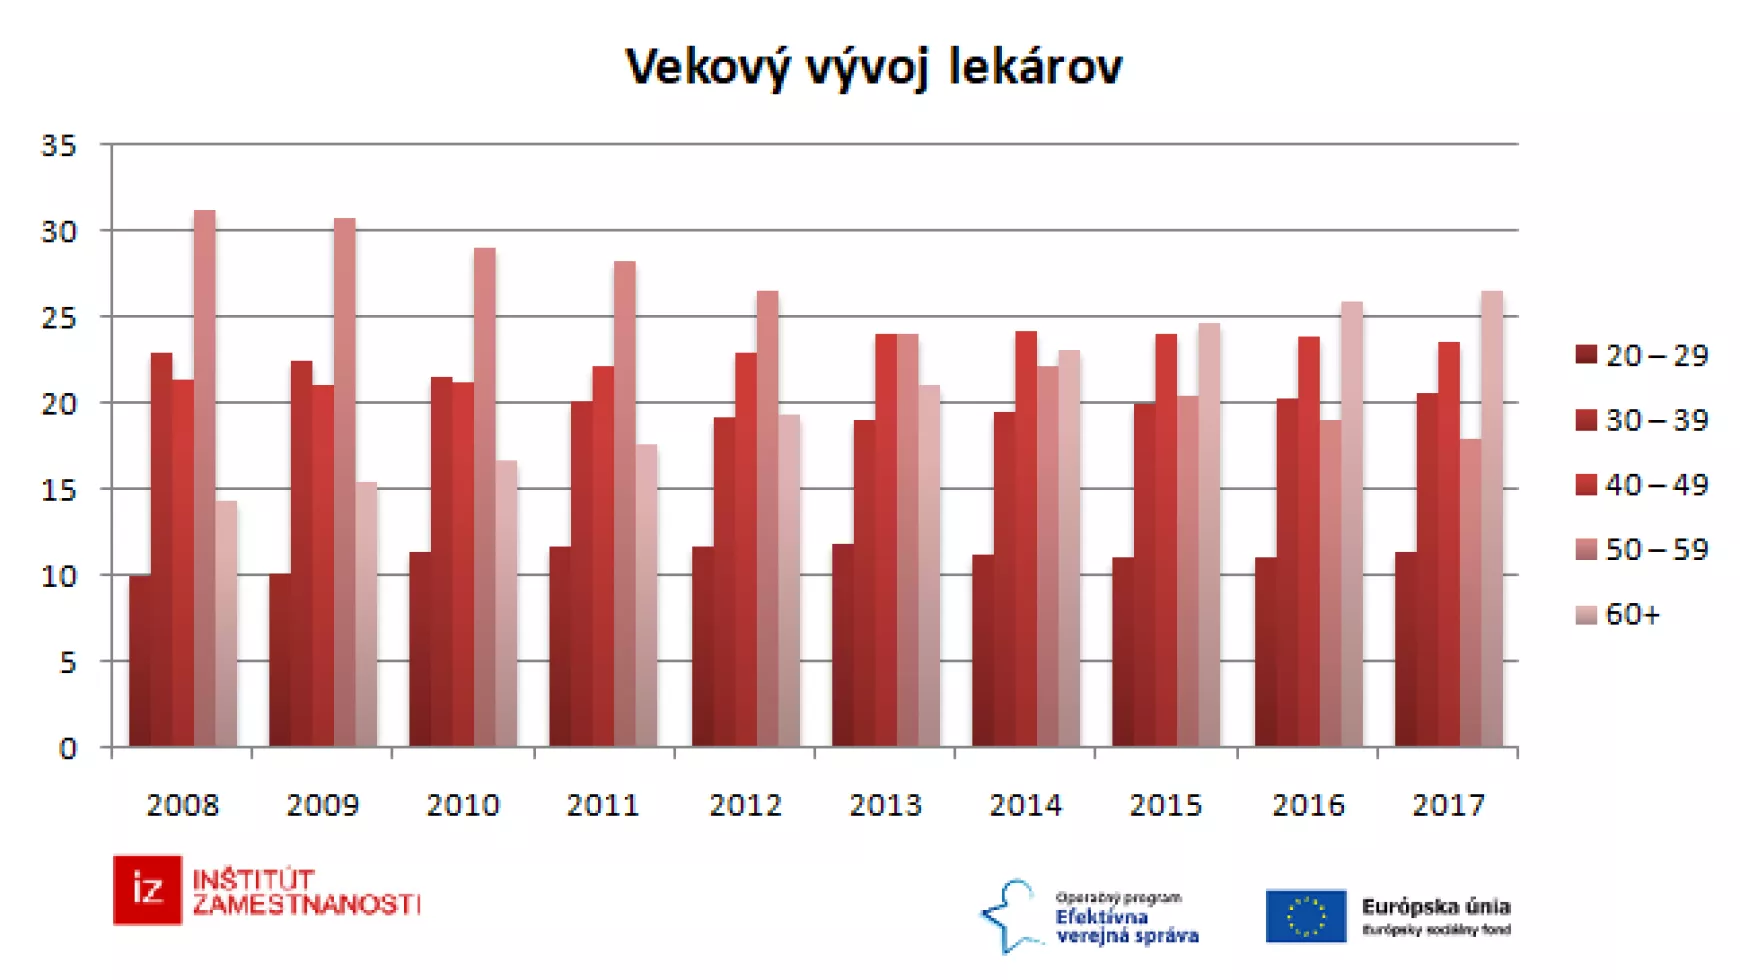 A szlovákiai orvosok életkorának alakulása az utóbbi években. Jelenleg egynegyedük 60 év feletti.